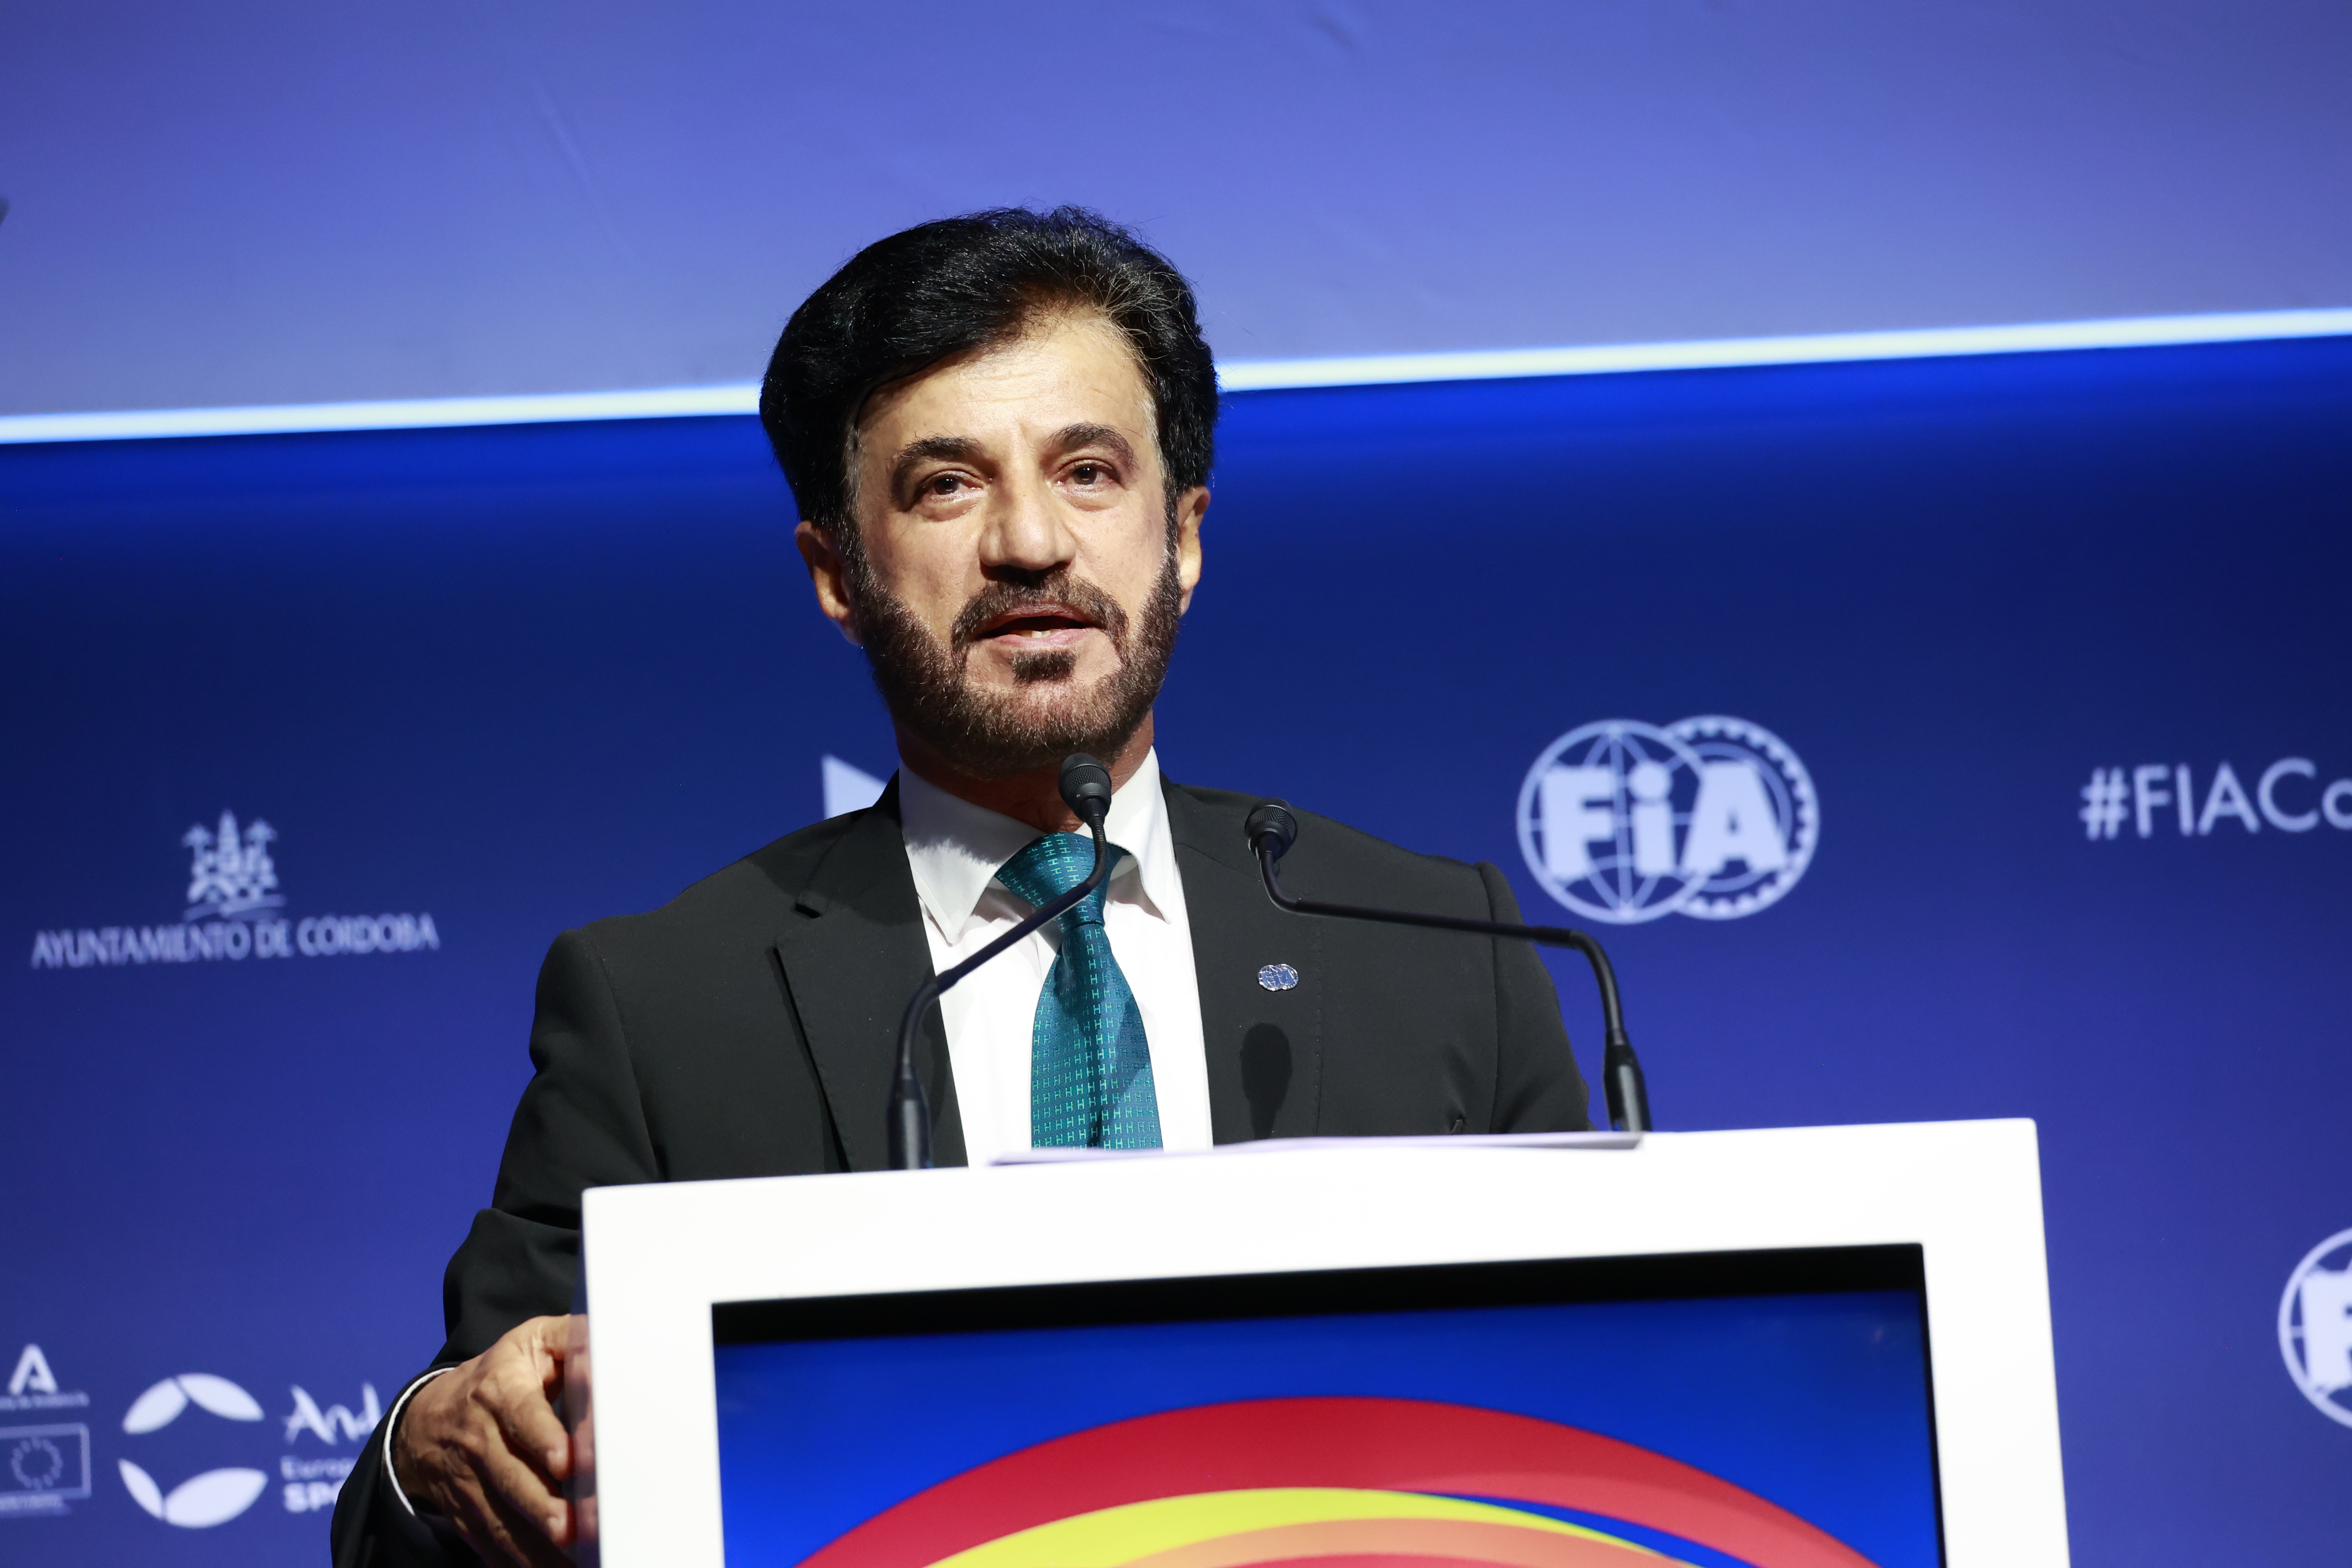 Discurso del Presidente de la Federación Internacional de Automovilismo, Mohamed bin Sulayem, en la apertura de la Conferencia Conjunta sobre Movilidad y Deporte en Córdoba, España hoy (martes 20 de junio de 2023)